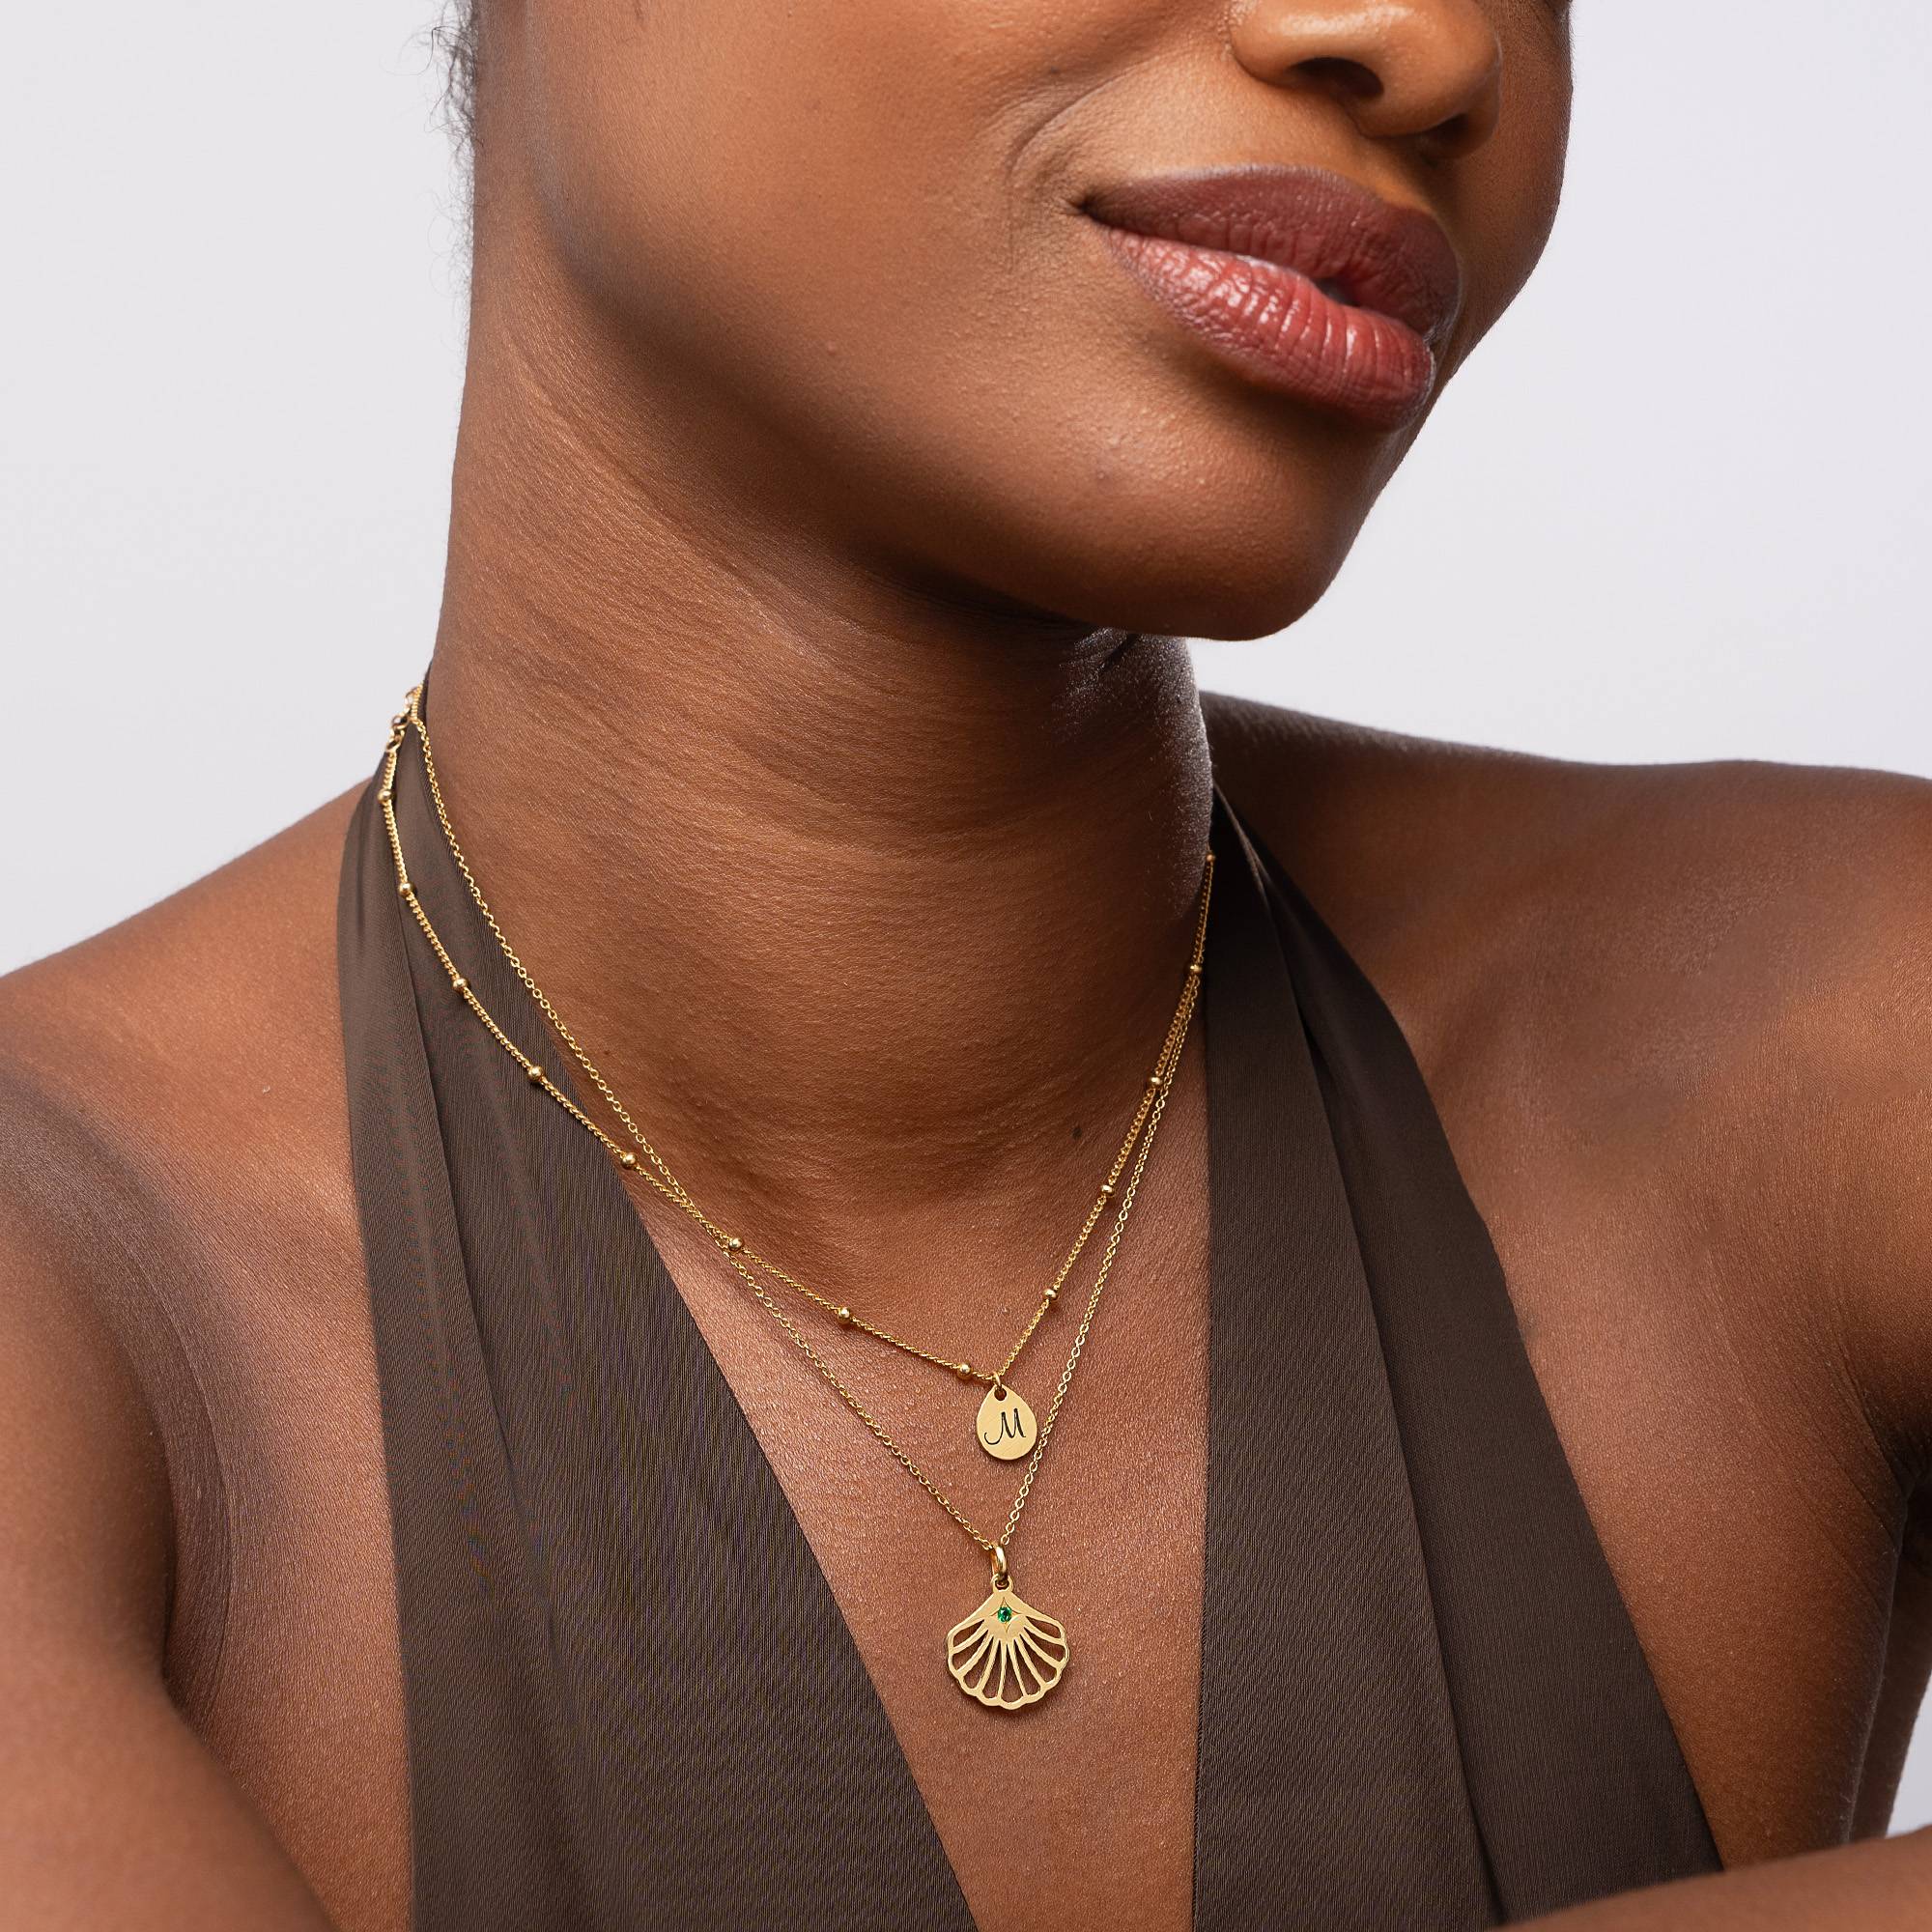 Ariel Muschel Initial Halskette mit Geburtsstein - 750er Gold-Vermeil-6 Produktfoto